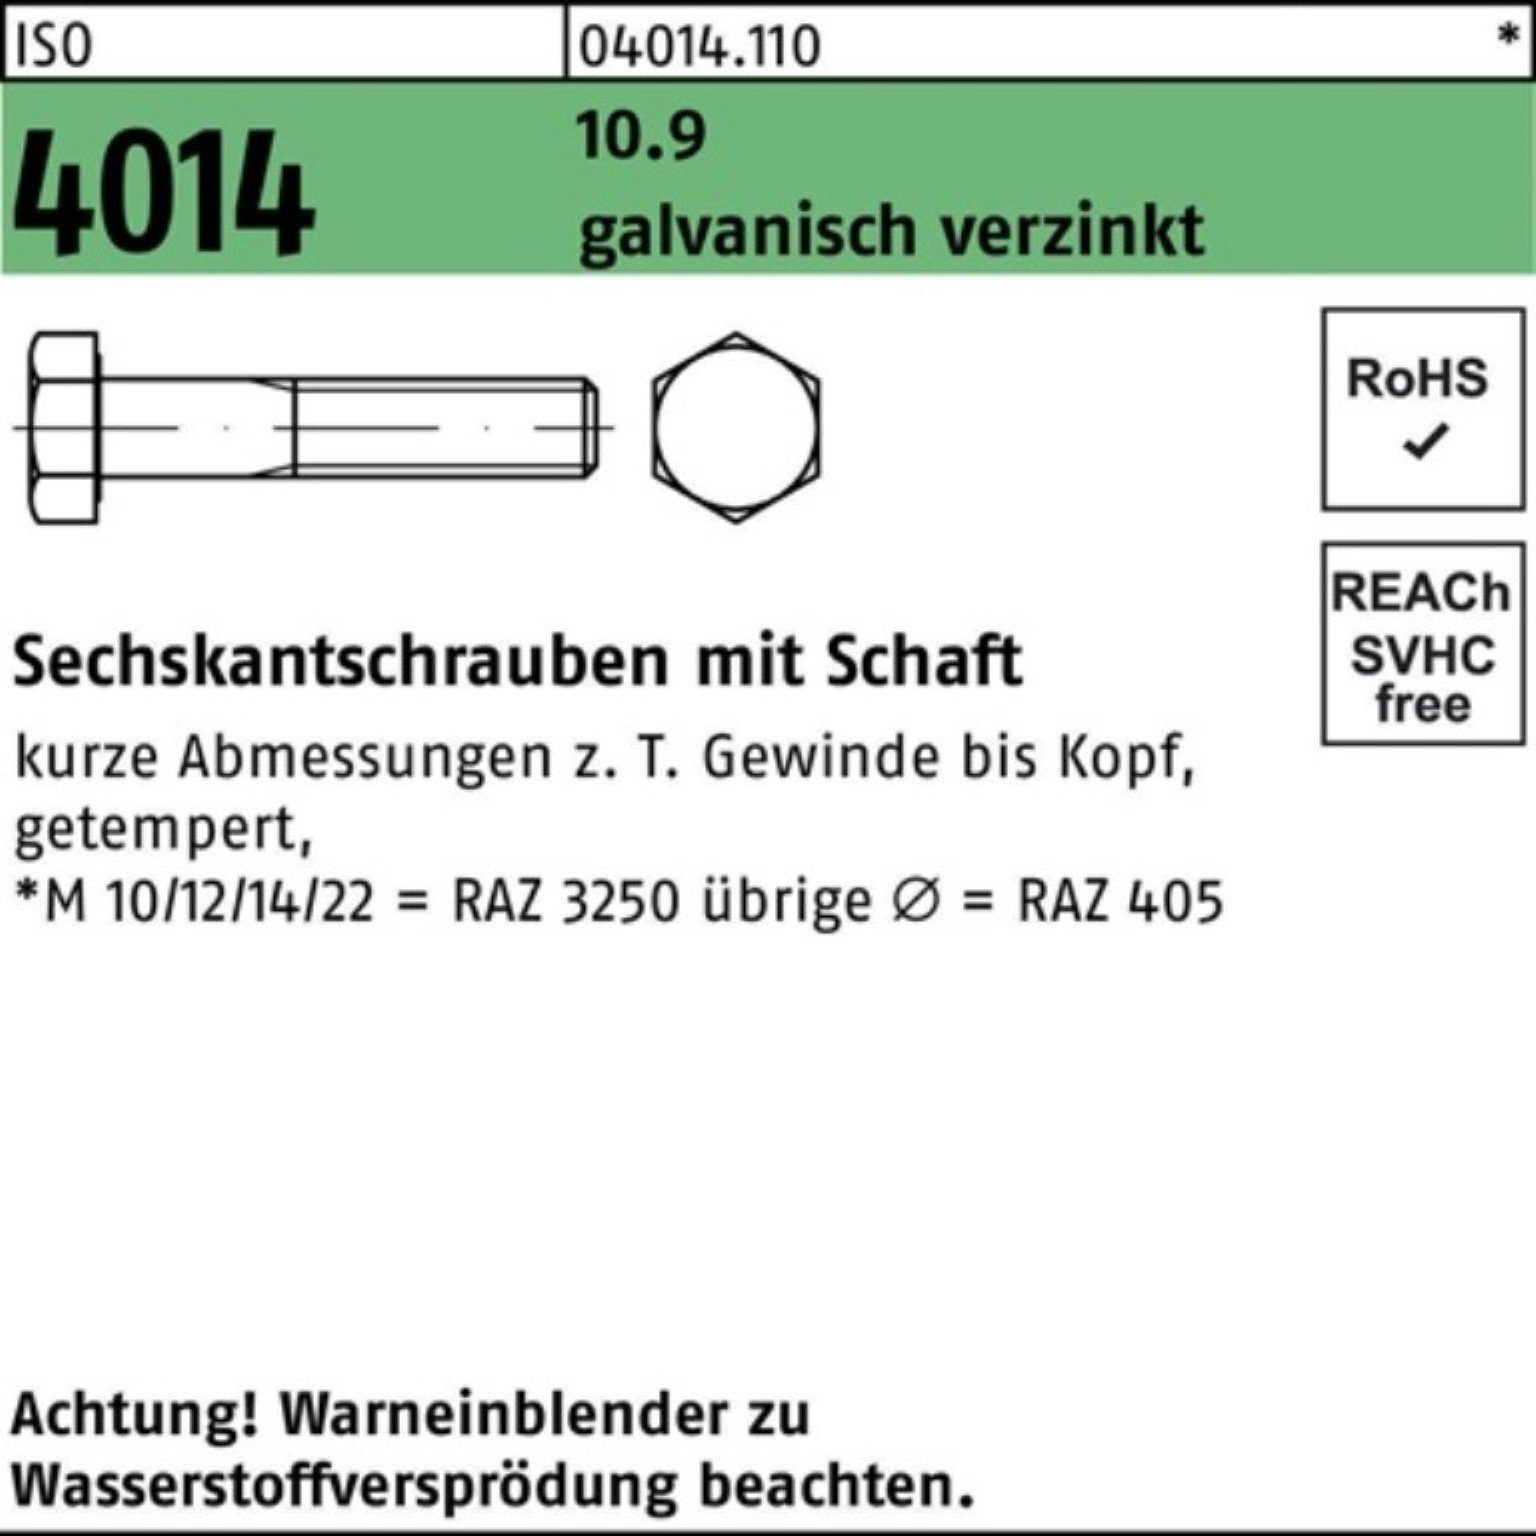 Bufab Sechskantschraube 100er Schaft ISO 80 M18x 10.9 Pack 4014 galv.verz. 2 Sechskantschraube